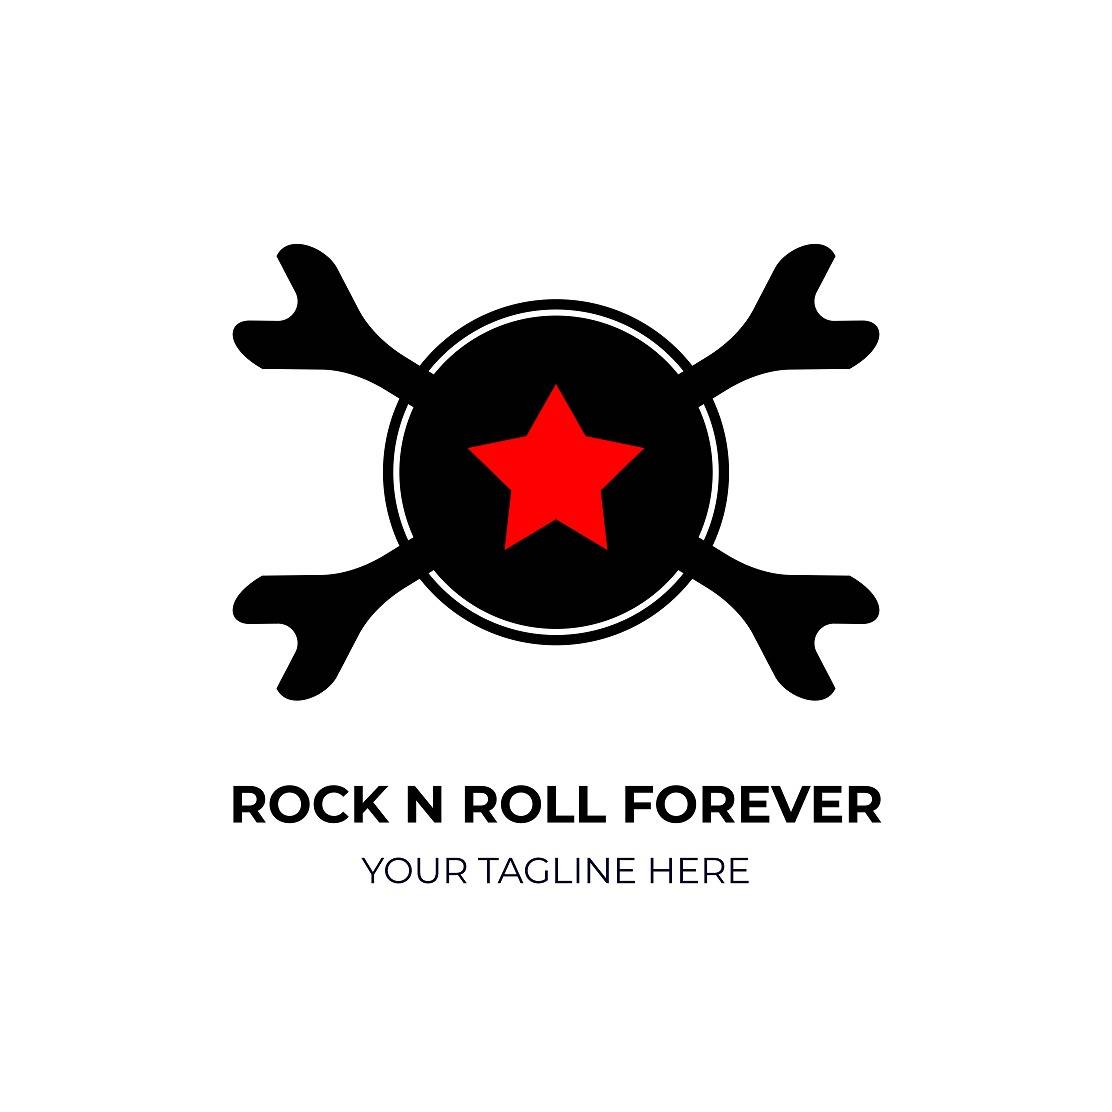 Rock n roll forever logo